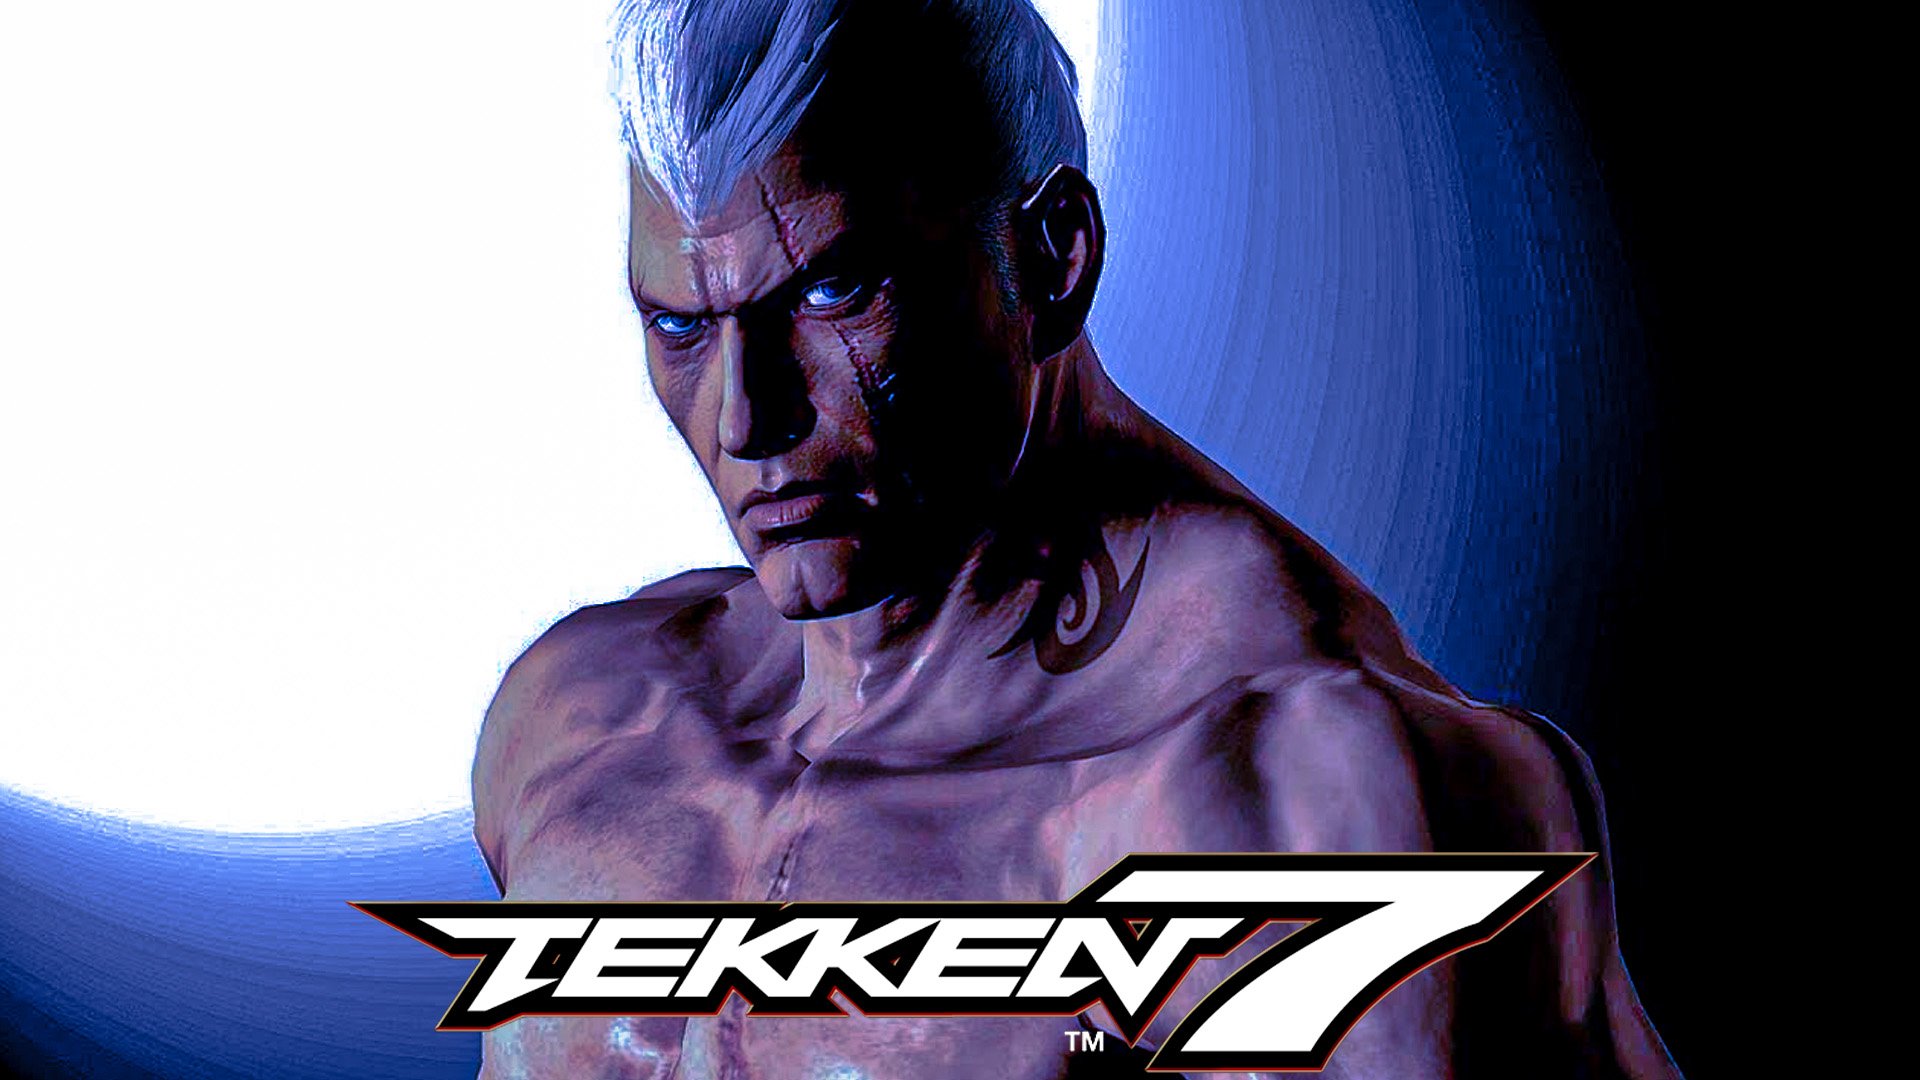 Bryan Fury voice from Tekken 5